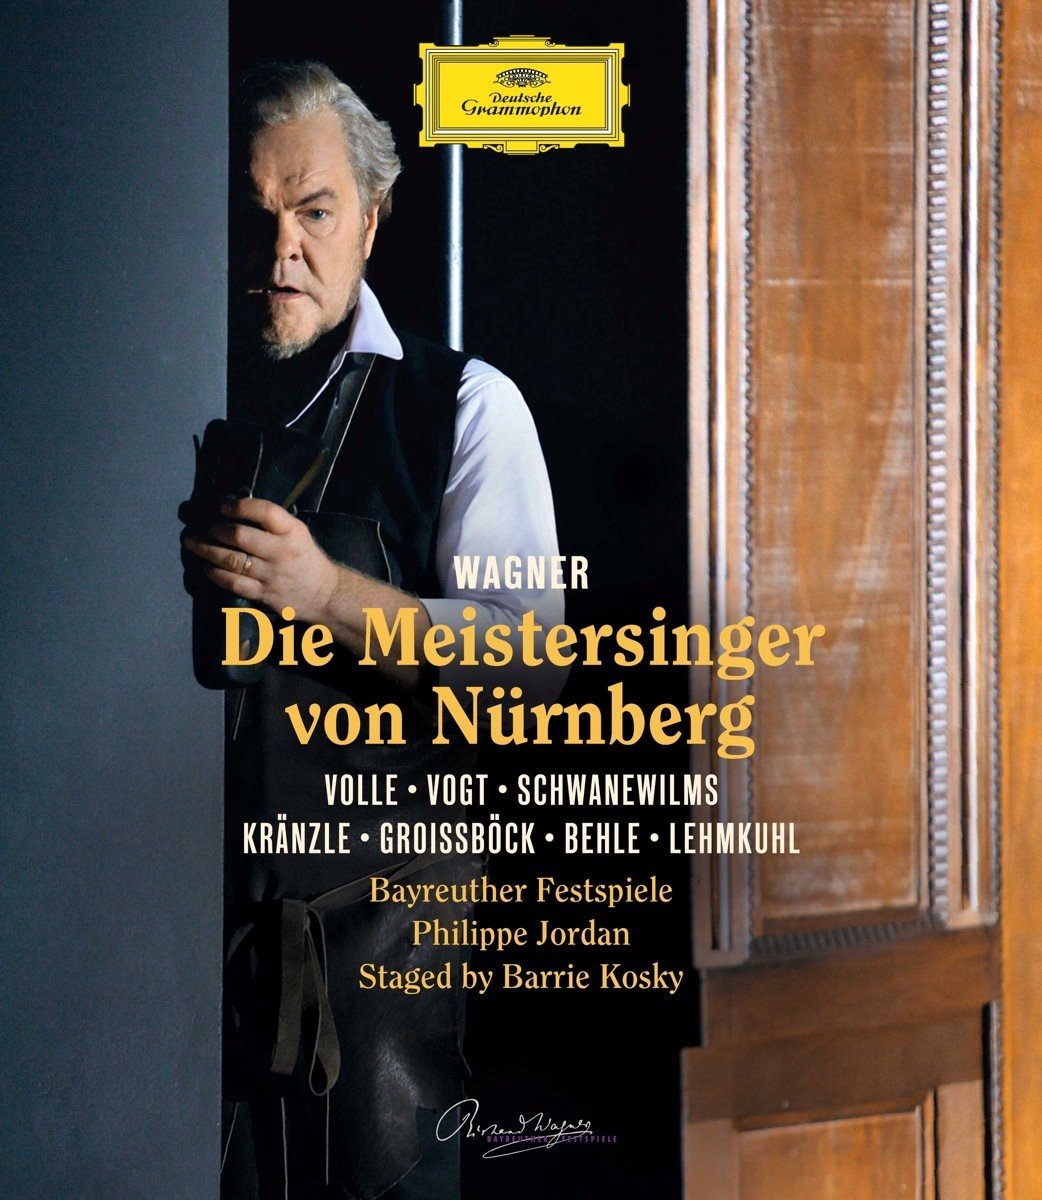 Festspielchor Bayreut, Festspielorchester Bayreuth - Wagner: Die Meistersinger Von Nürnberg (Blu-ray)